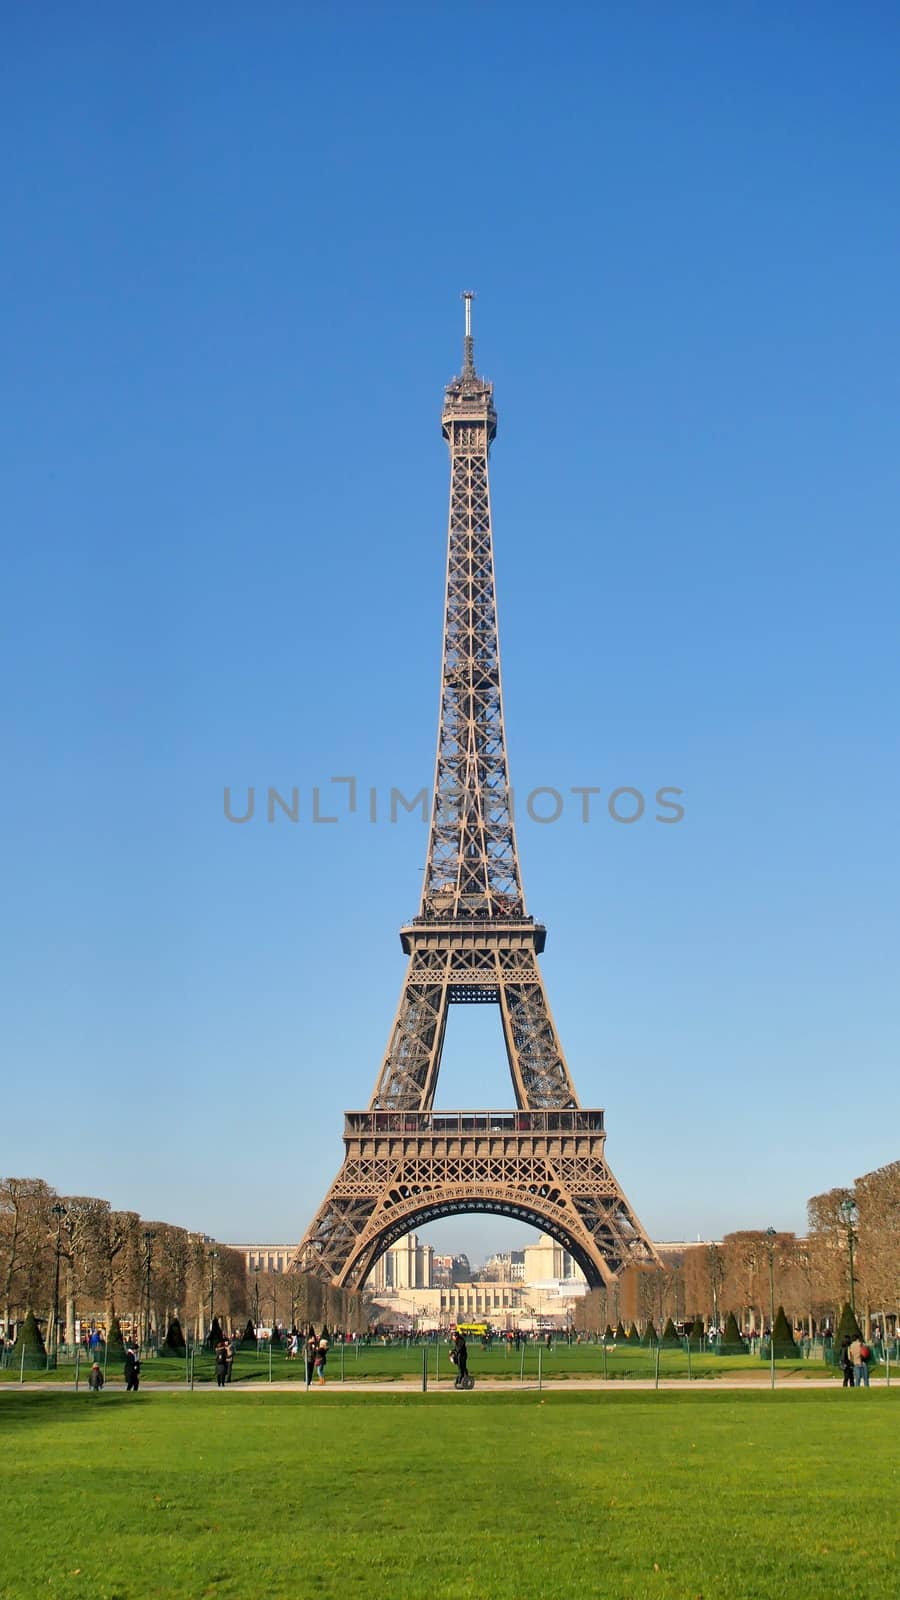 Eiffel Tower, Paris Best Destinations in Europe